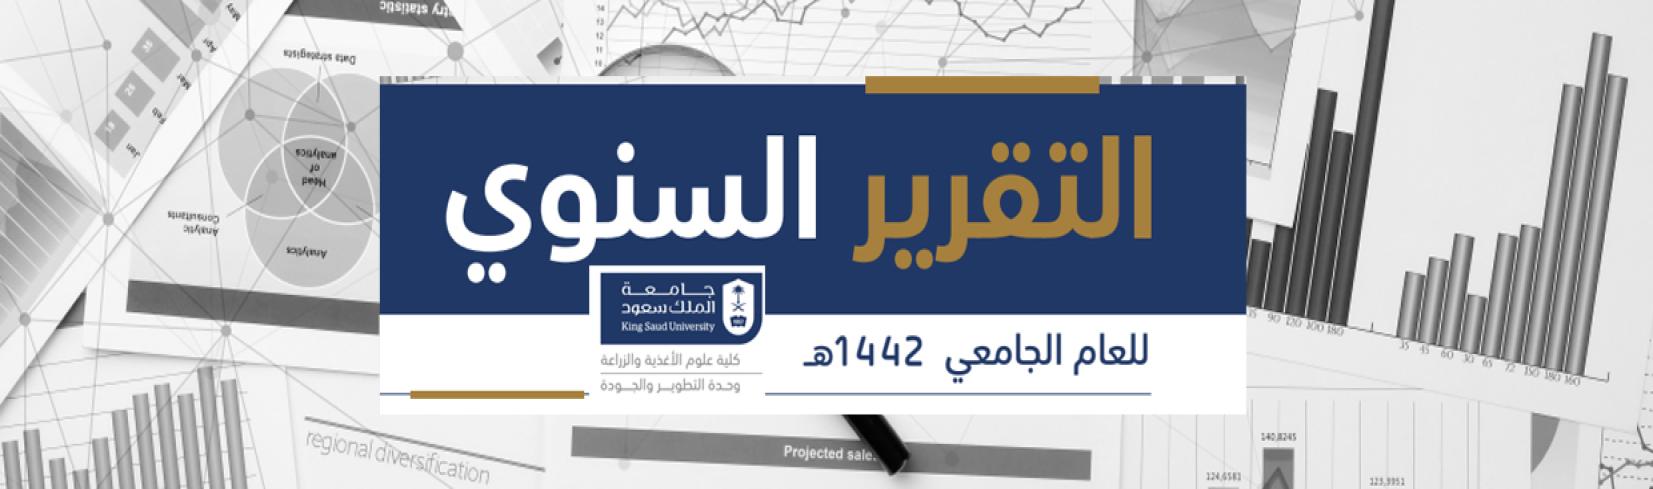 رسالة جامعة الملك سعود المركبات الاليلوباثية